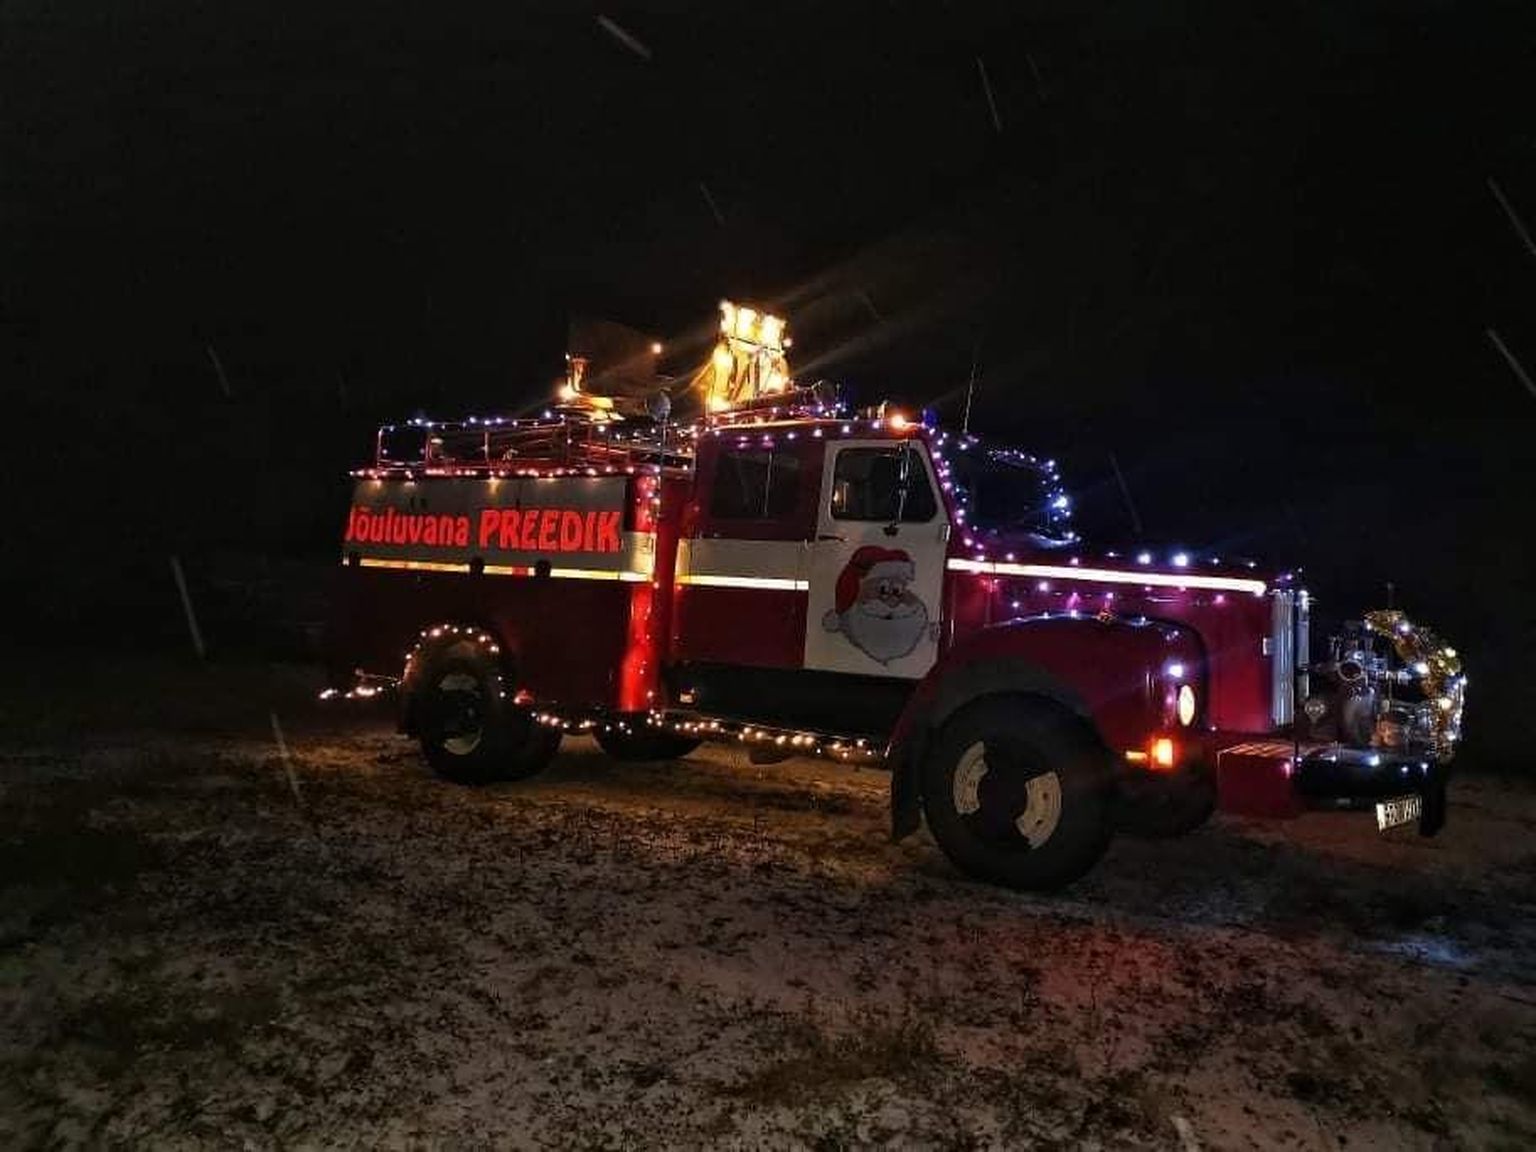 Jõuluvana Preedik sõidab tänavu laste juurde selle tuletõrjeautoga.